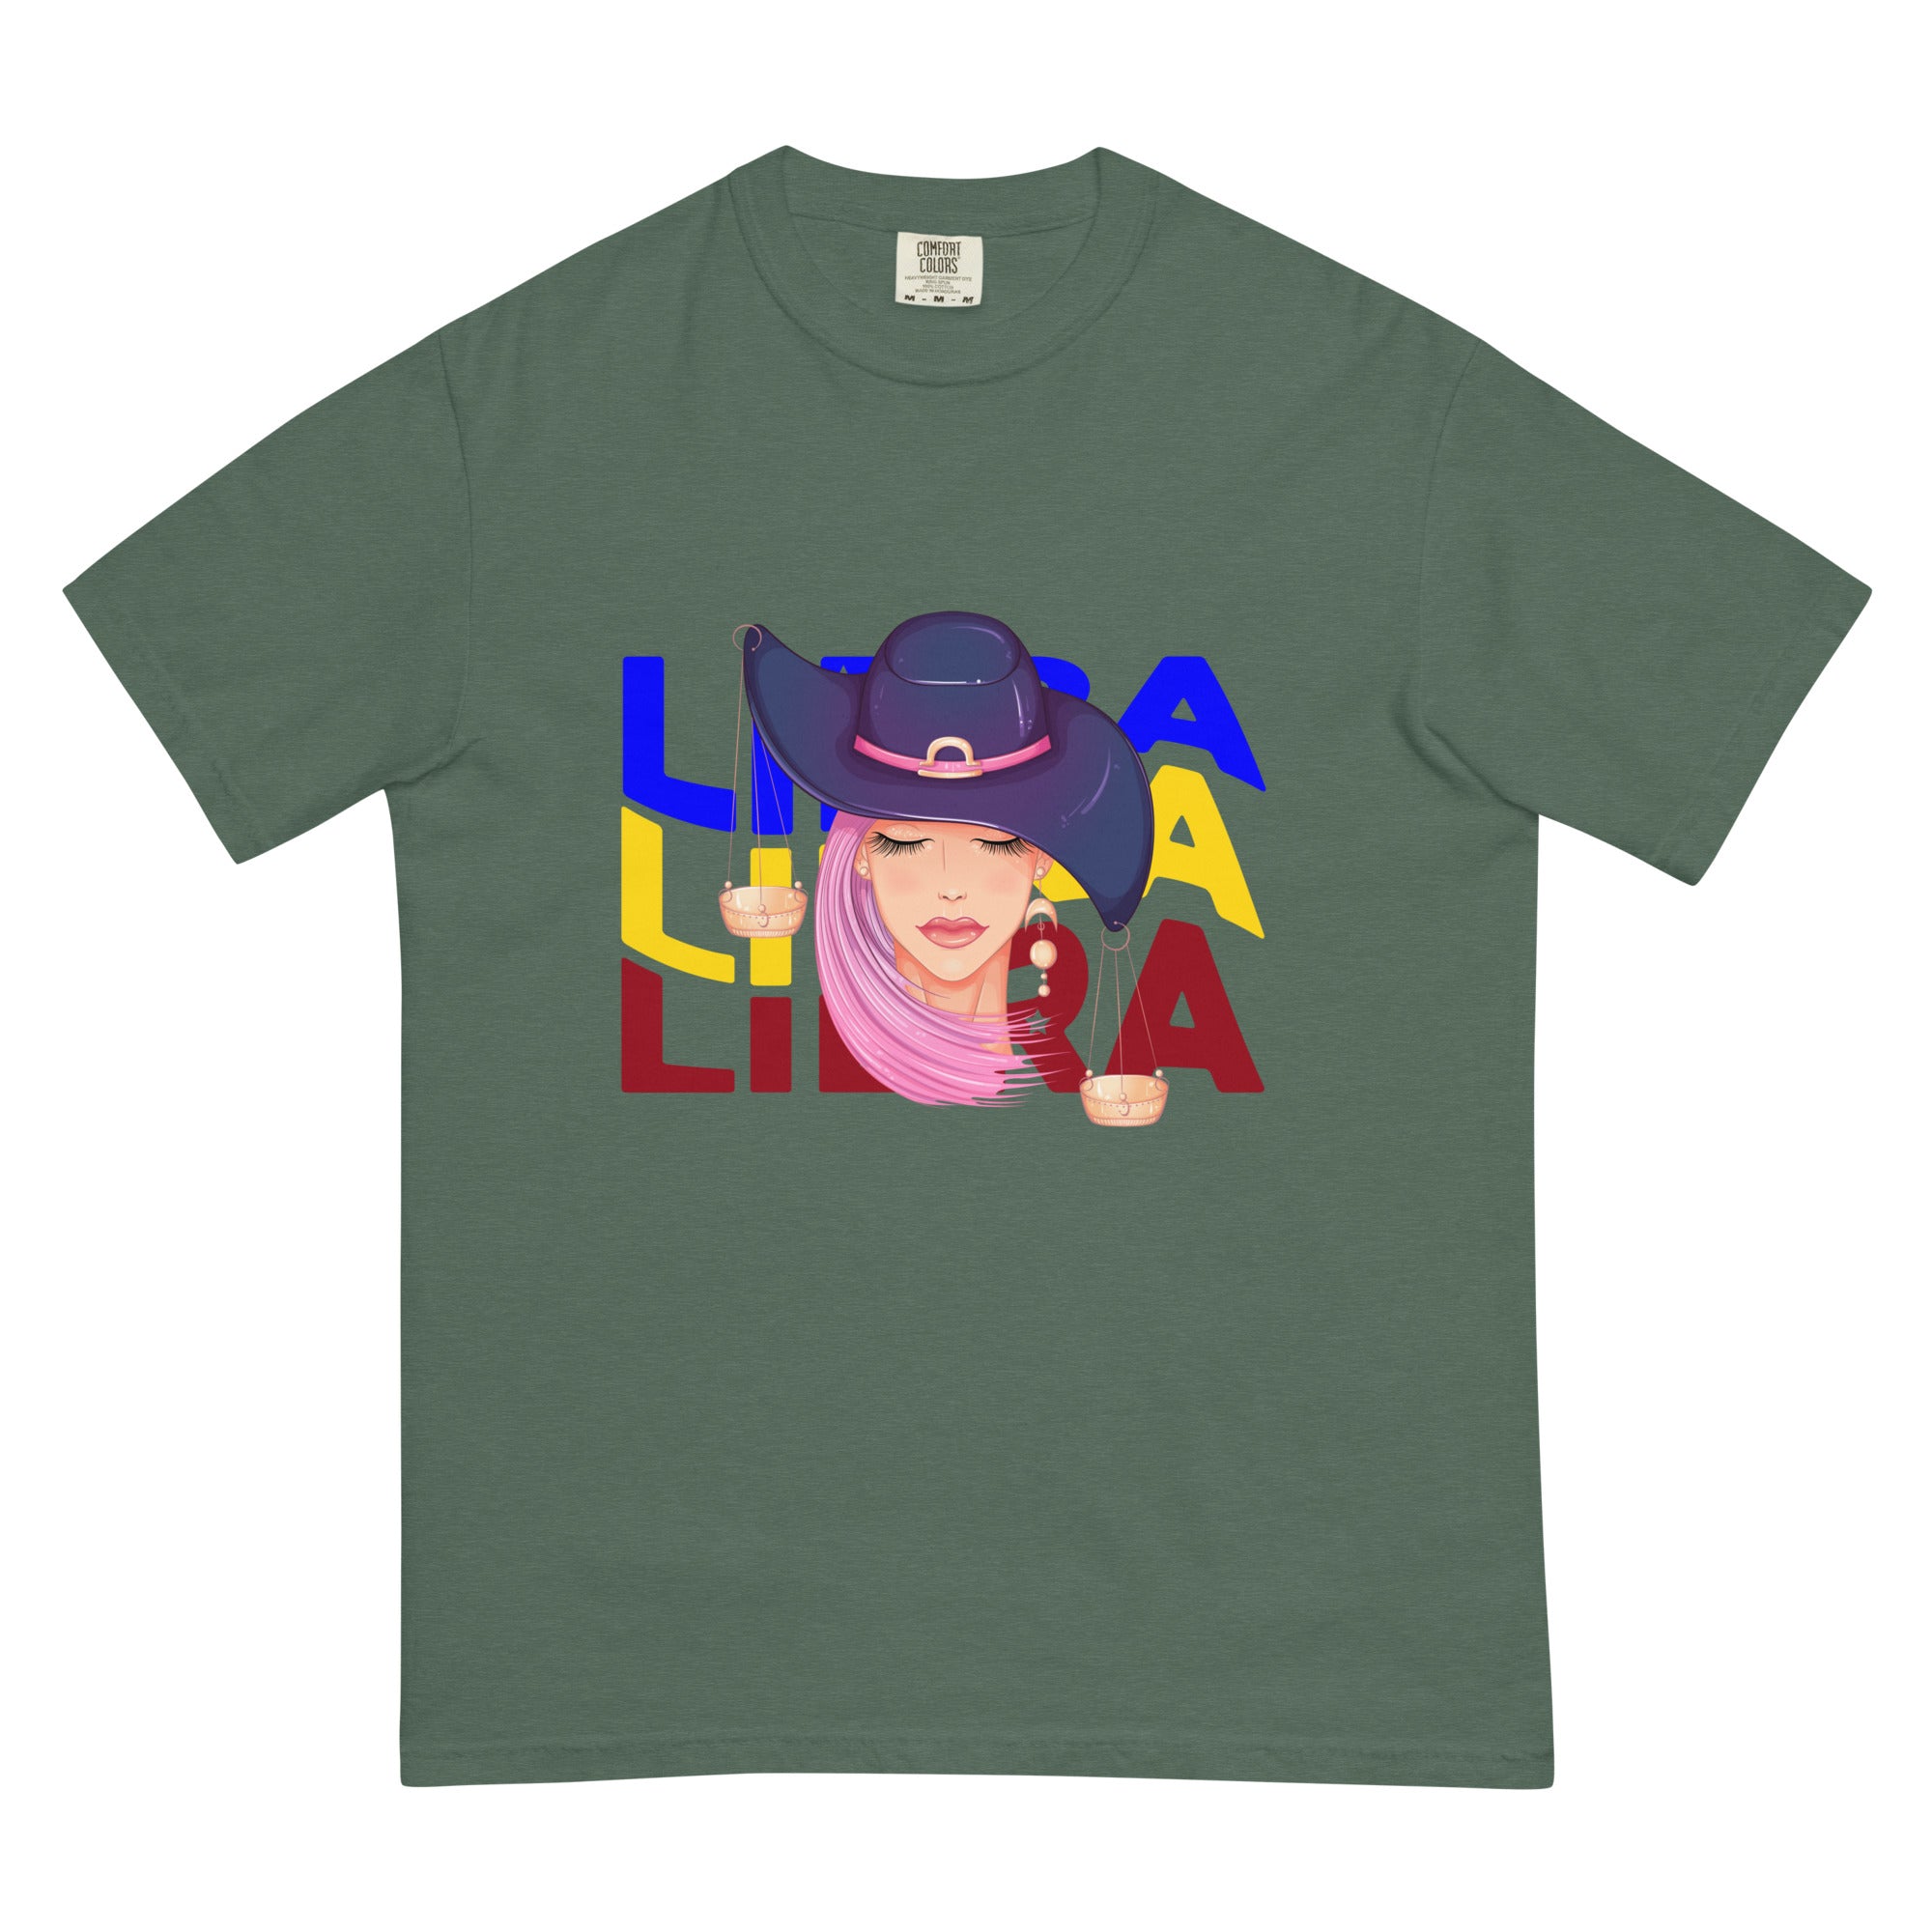 Libra Unisex garment-dyed heavyweight t-shirt